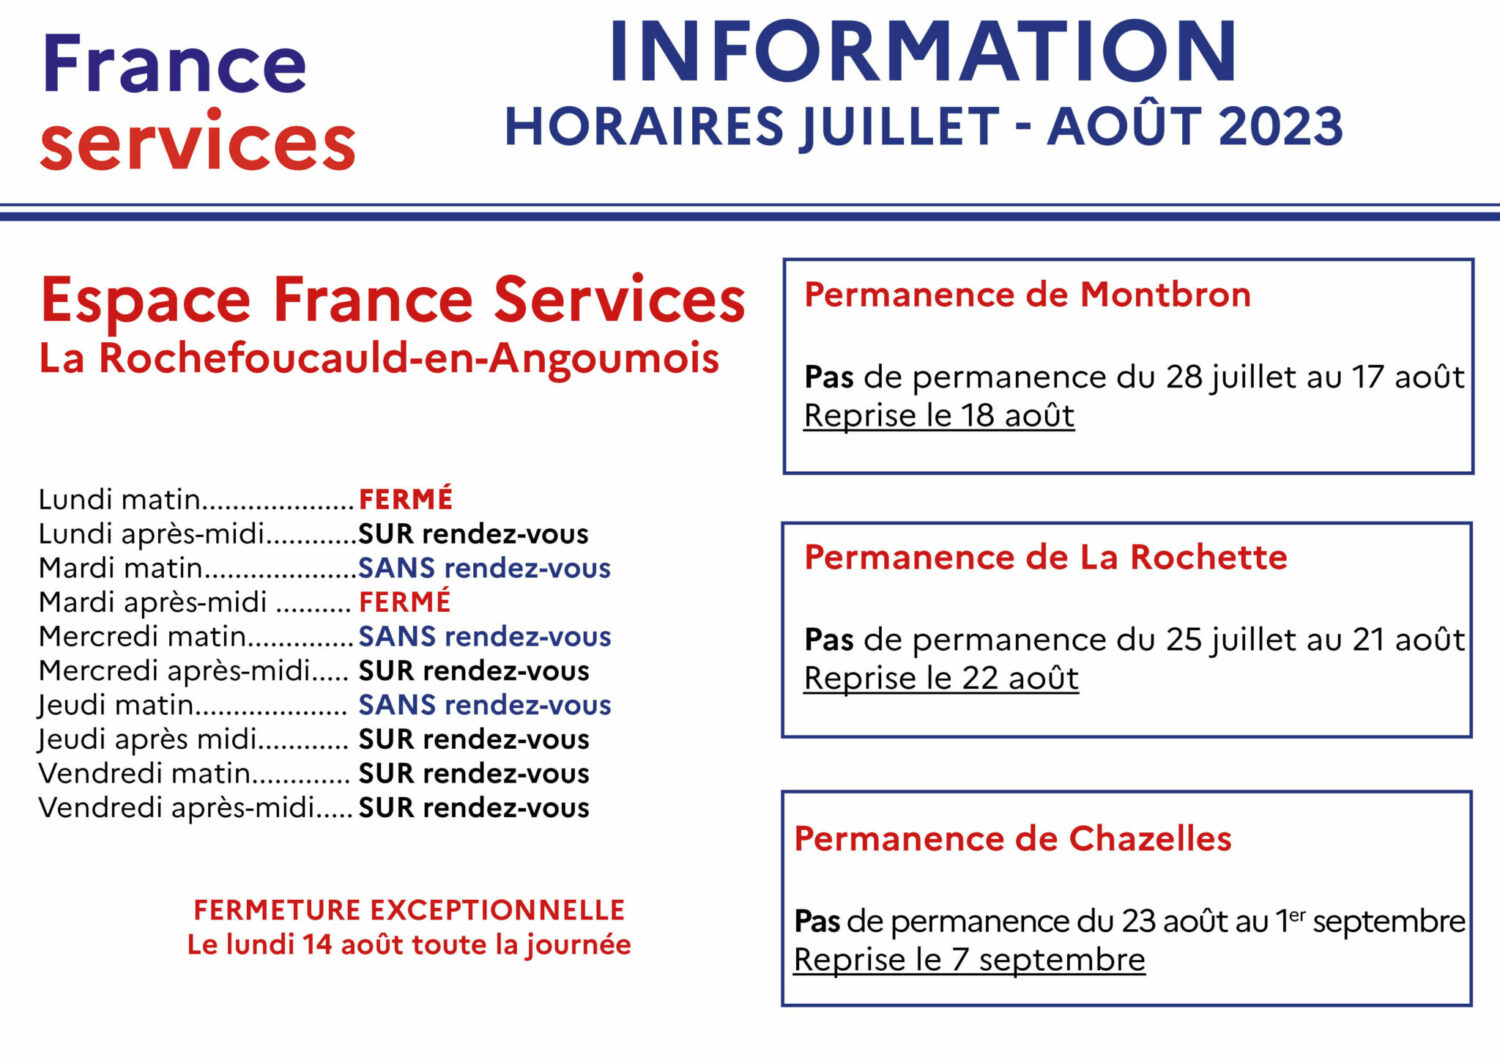 L’Espace France Services change ses horaires pour la période estivale